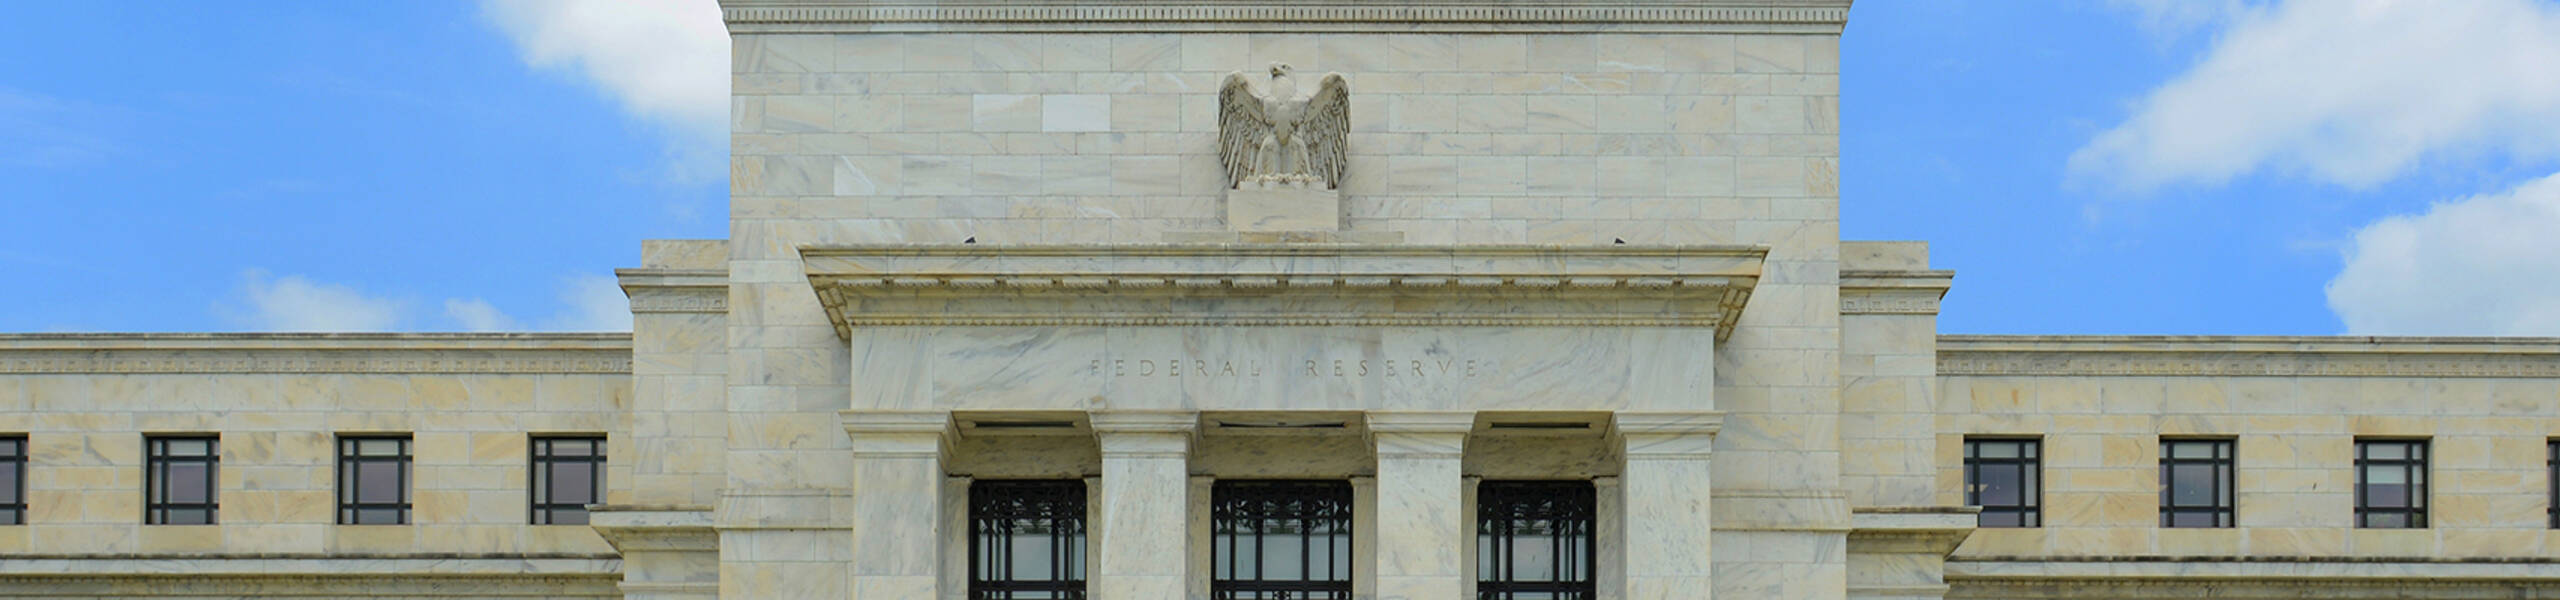 FOMC Statement และ Federal Funds Rate ของธนาคารกลางสหรัฐวันนี้